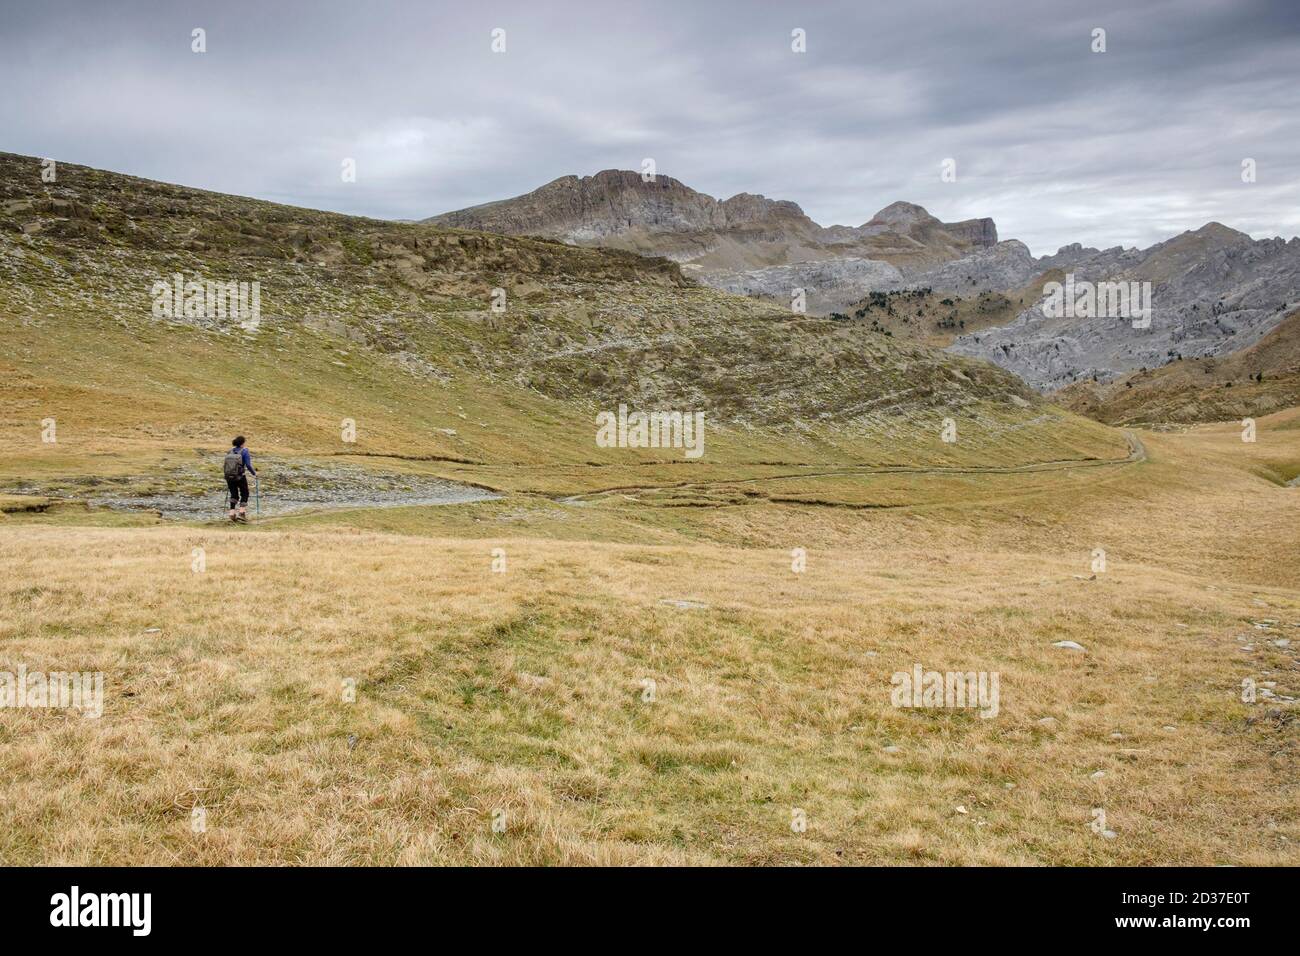 Cursionista, Linza, Parque natural de los Valles Occidentales, Huesca, cordillera de los pirineos, Spagna, Europa Foto Stock